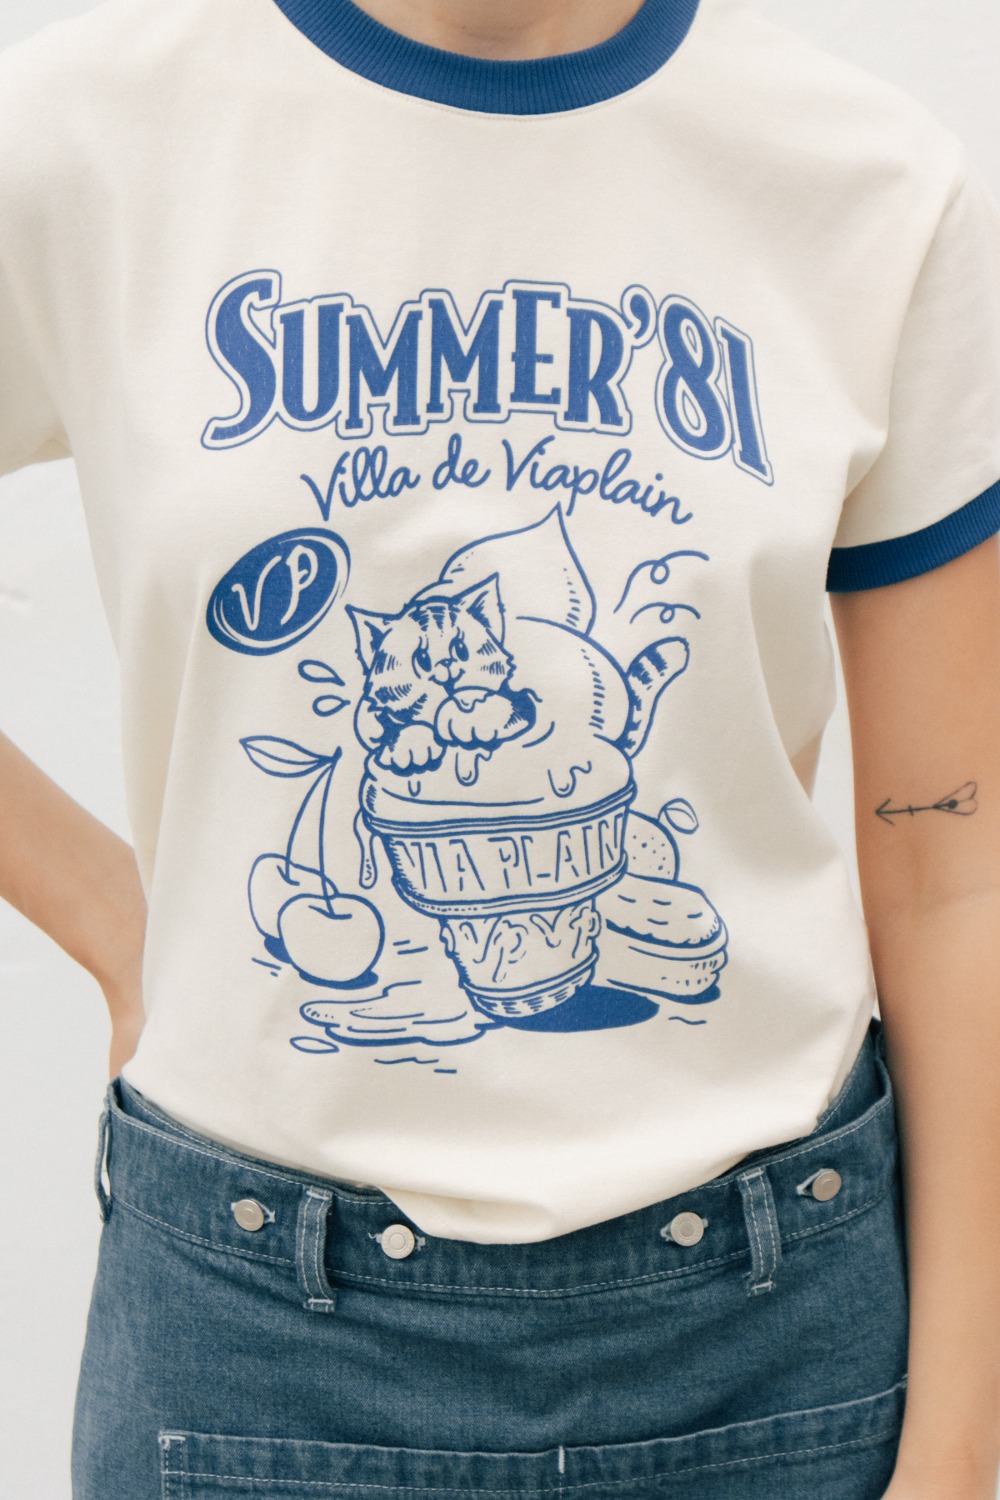 Via Summer&#039;81 T-shirt